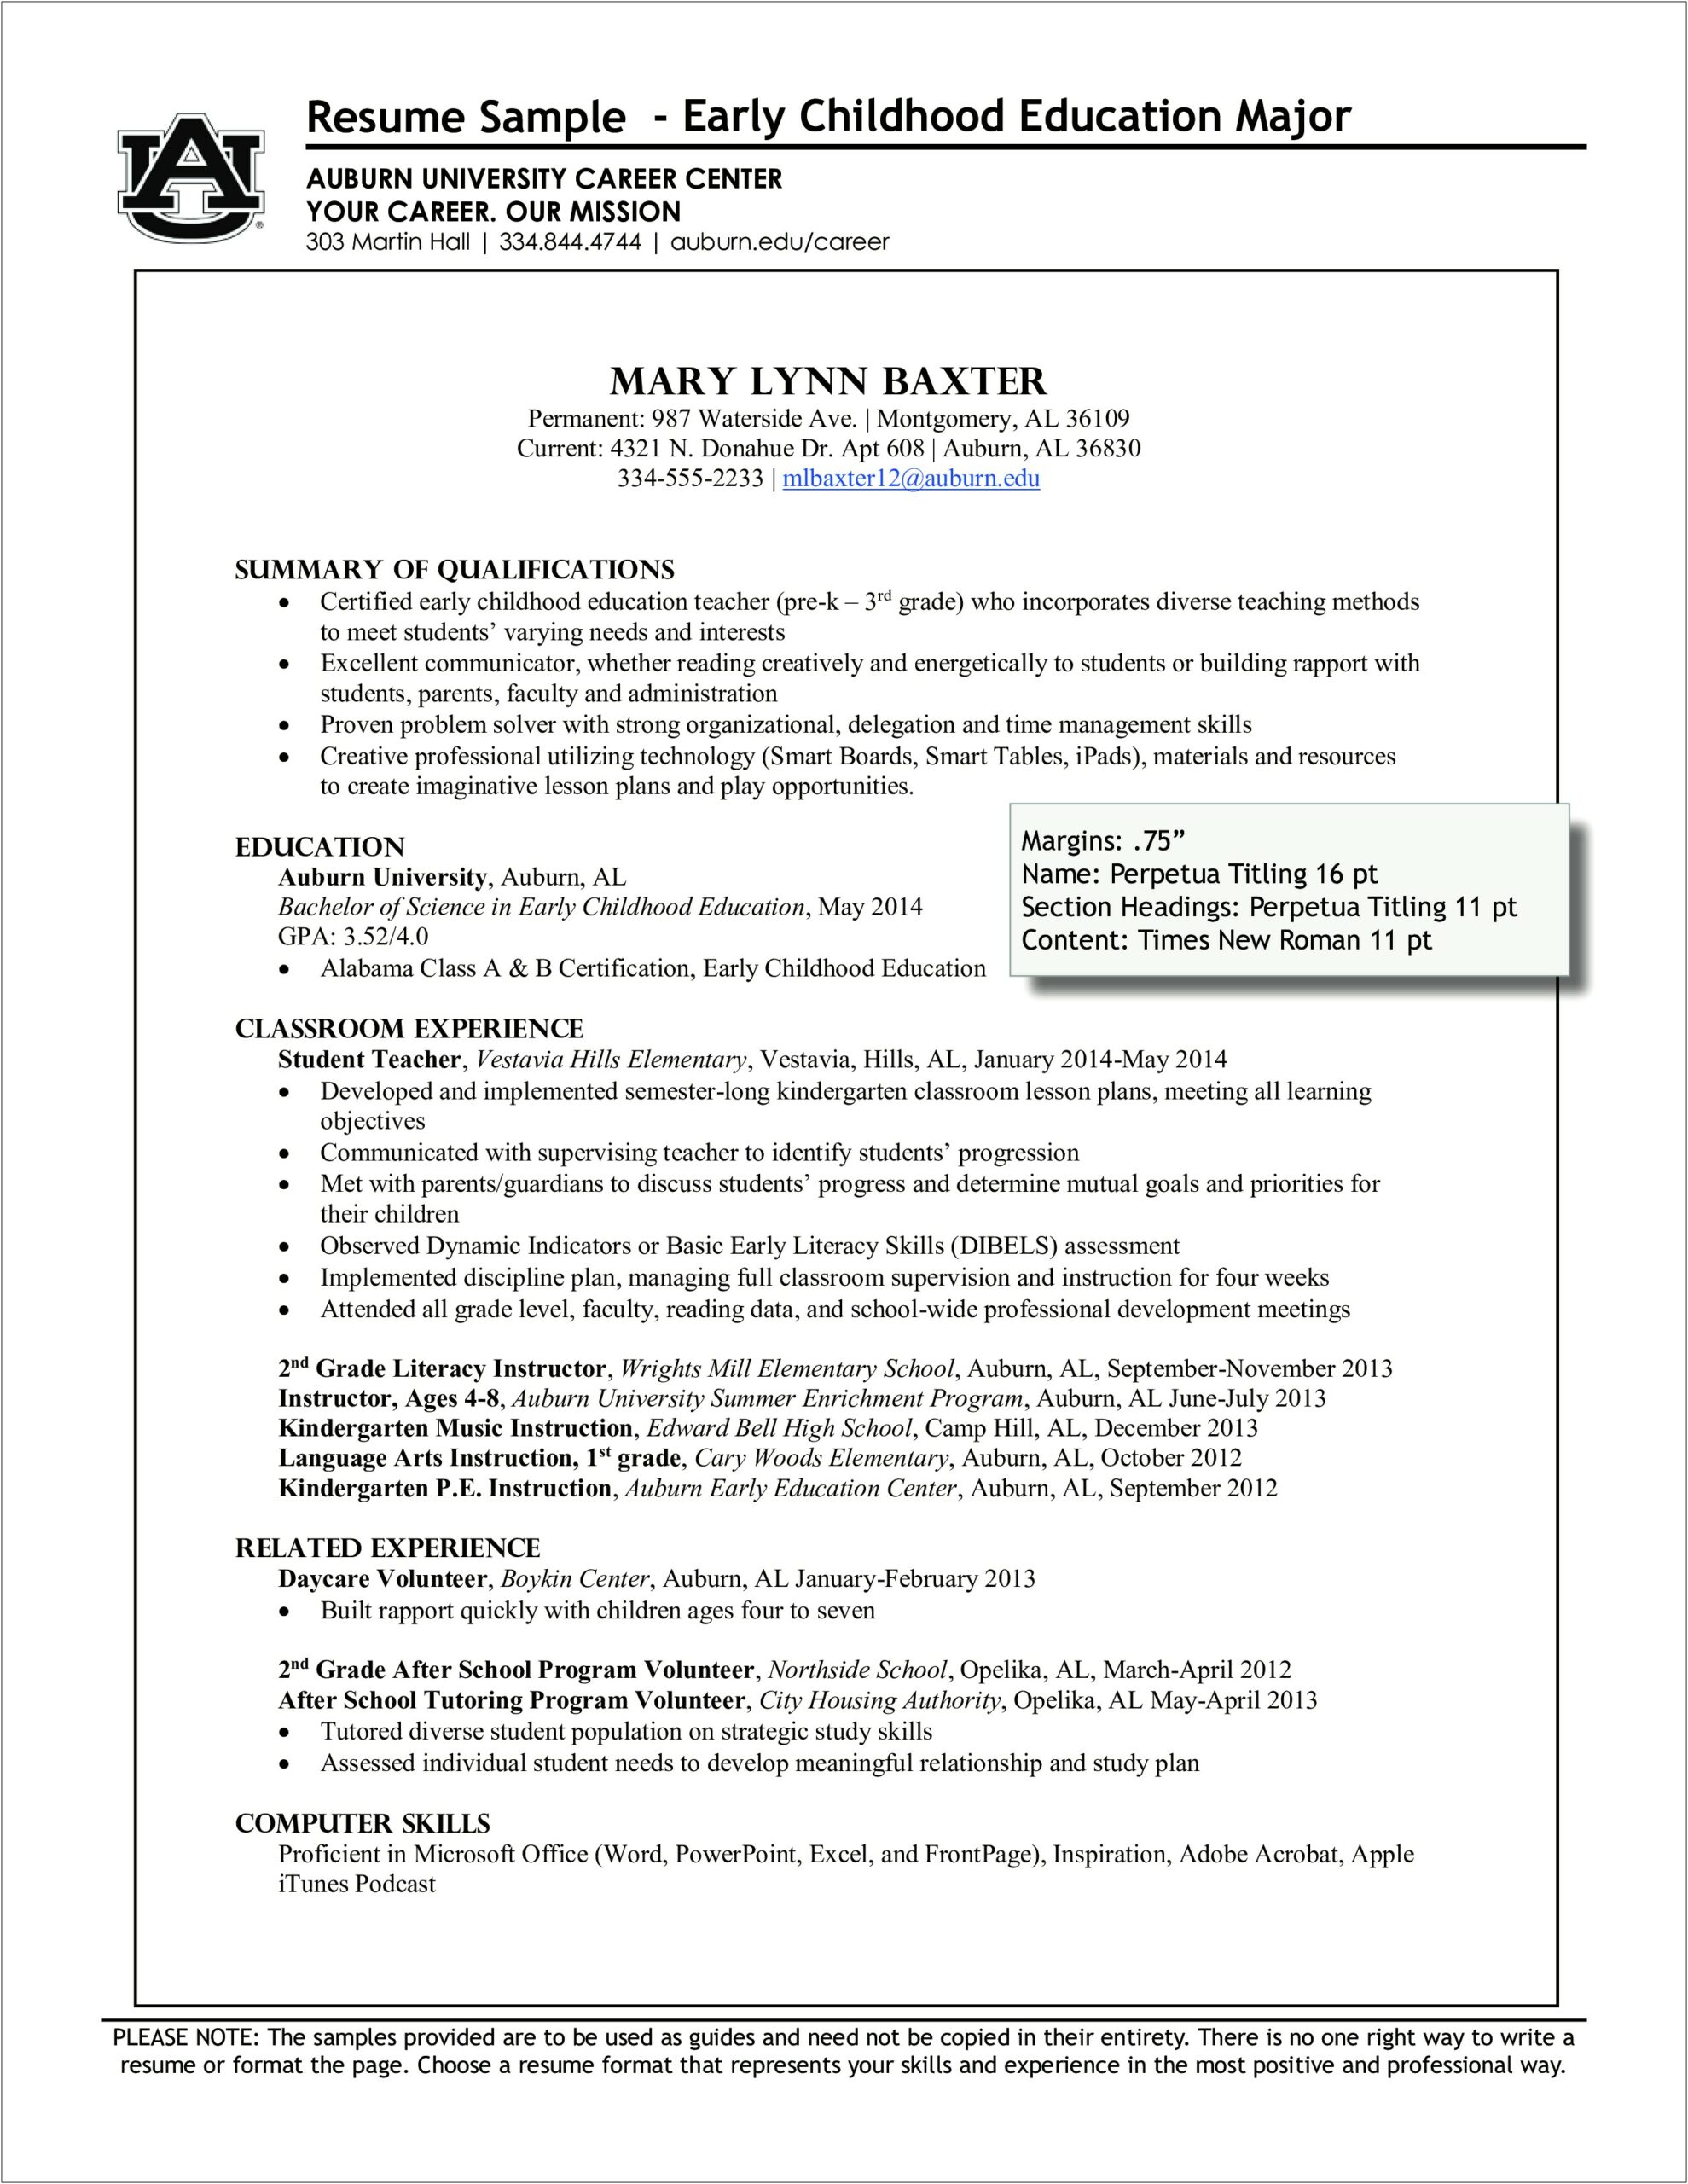 Sample Resume For Preschool Teacher Fresher